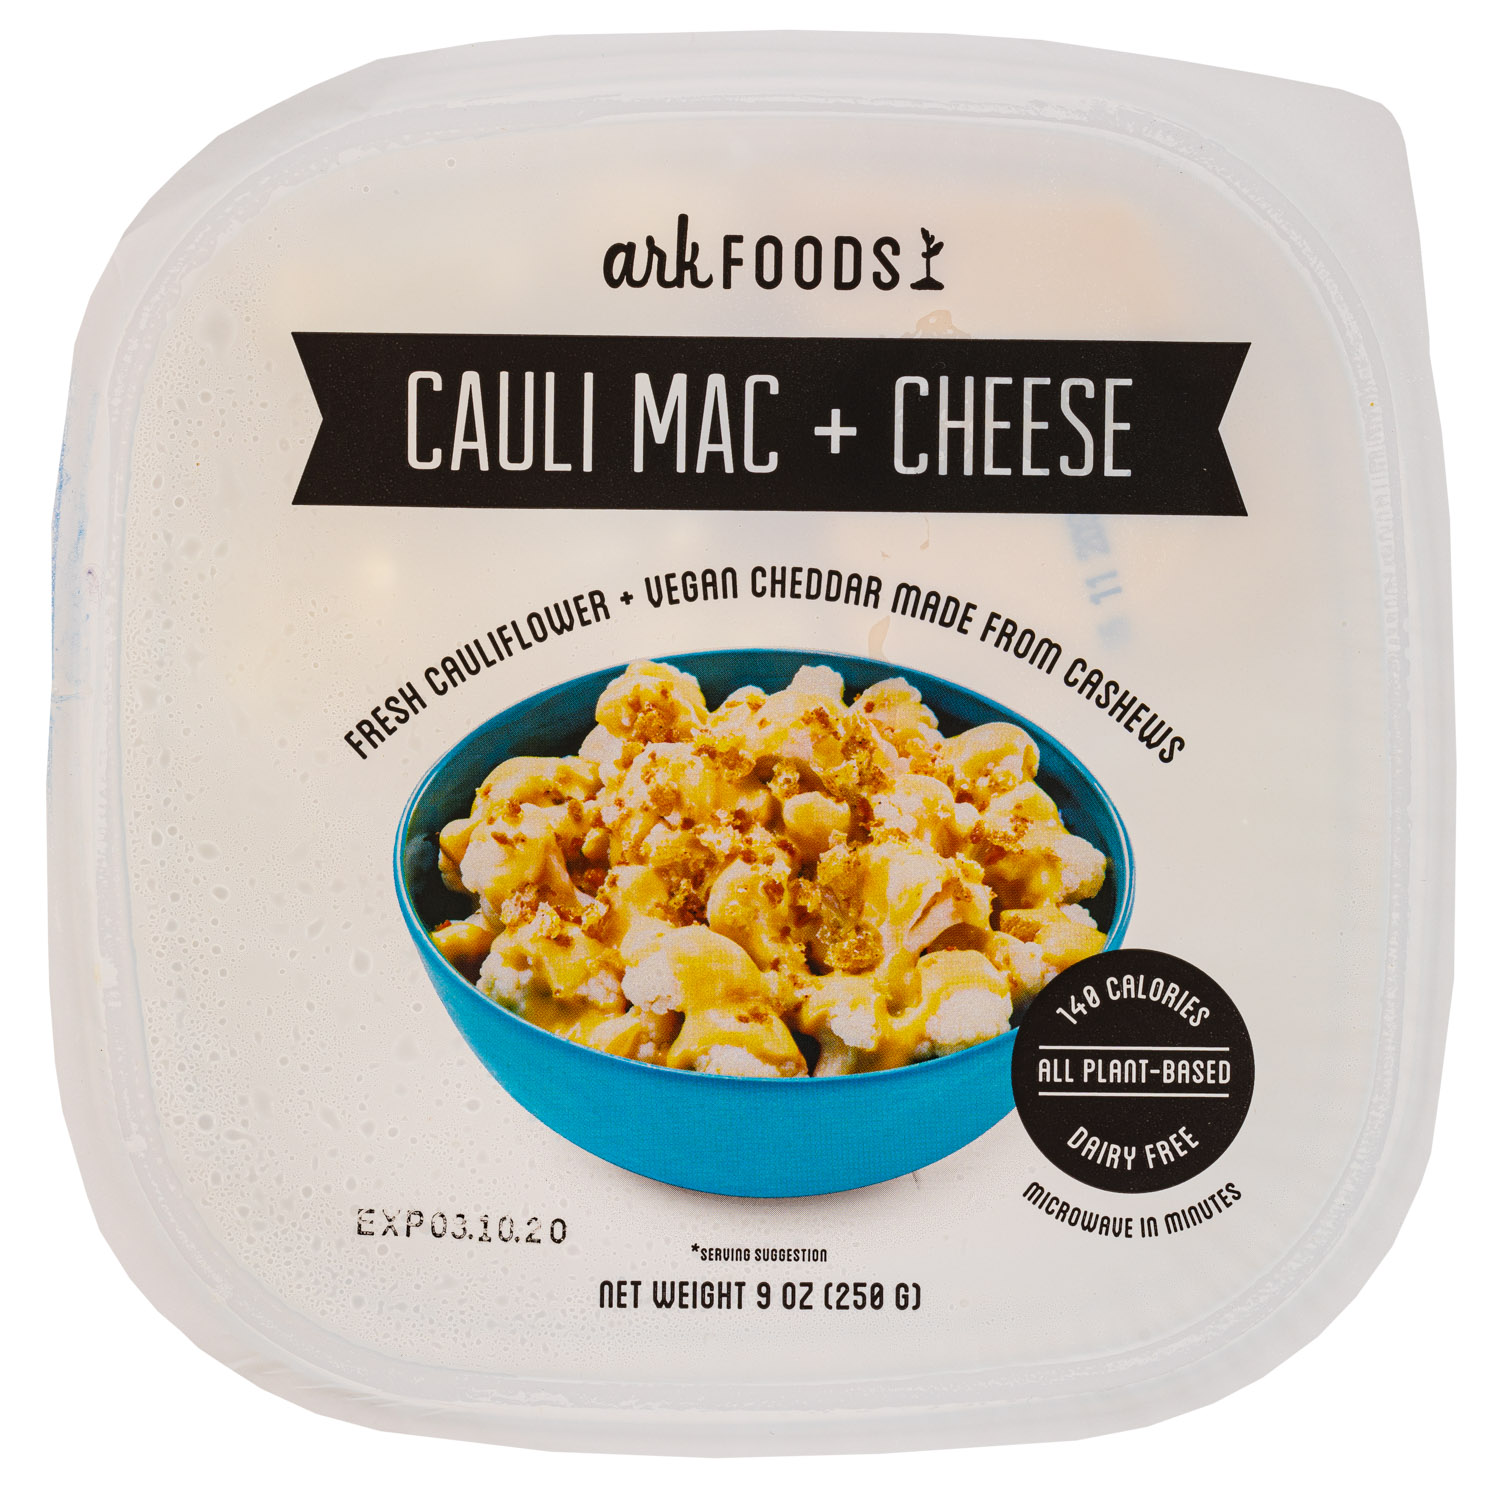 Fresh Cauliflower + Vegan Cheddar made from Cashews (2020)